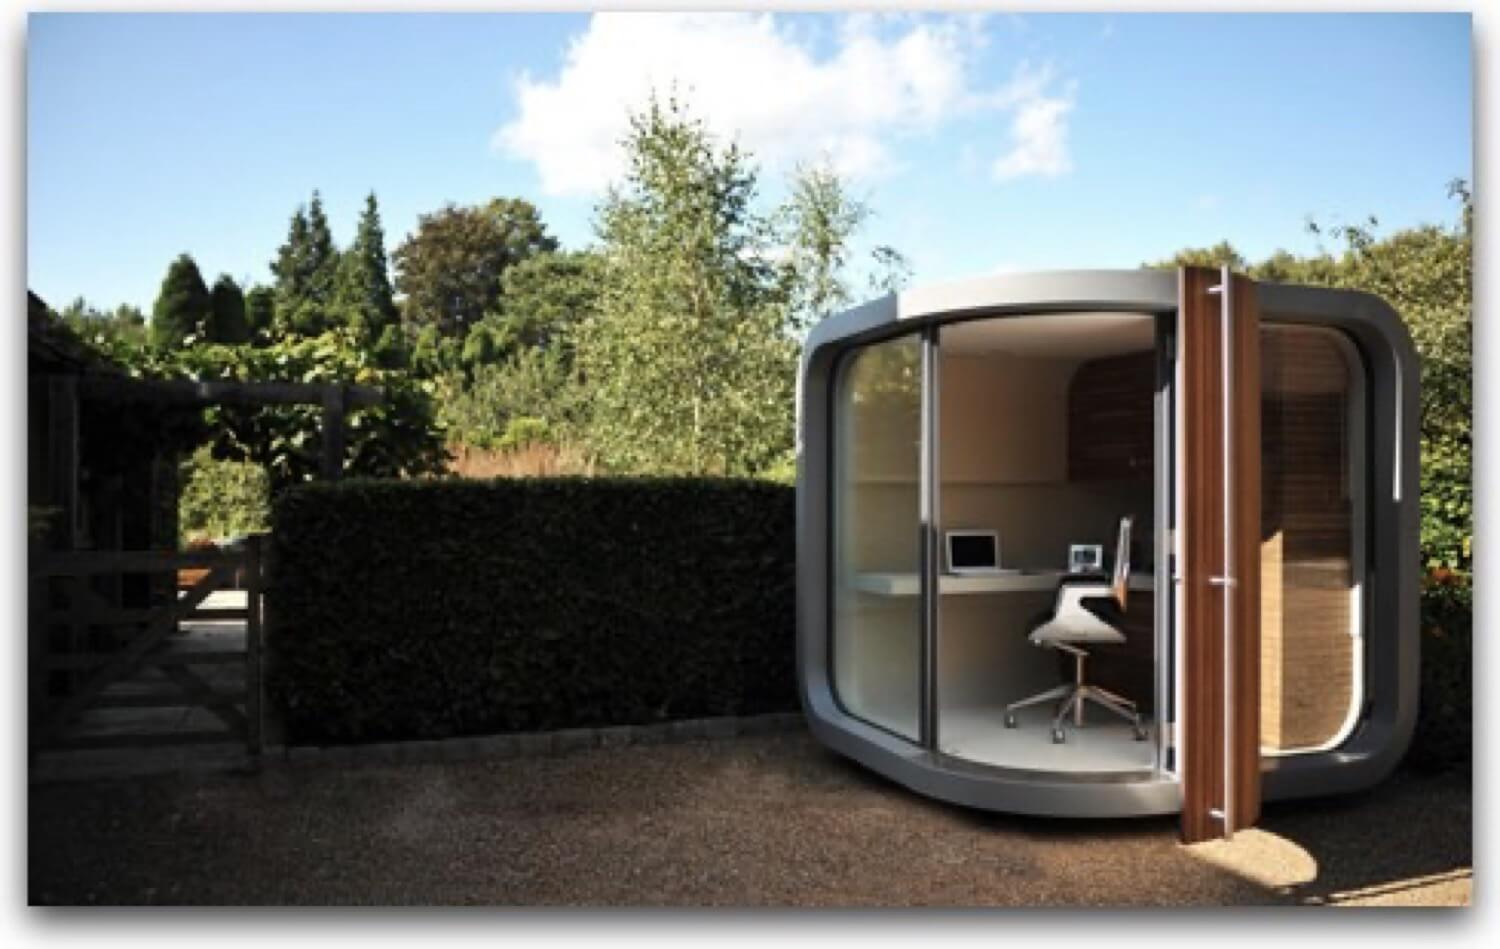 Zen Home-Working Environment - a cool business idea